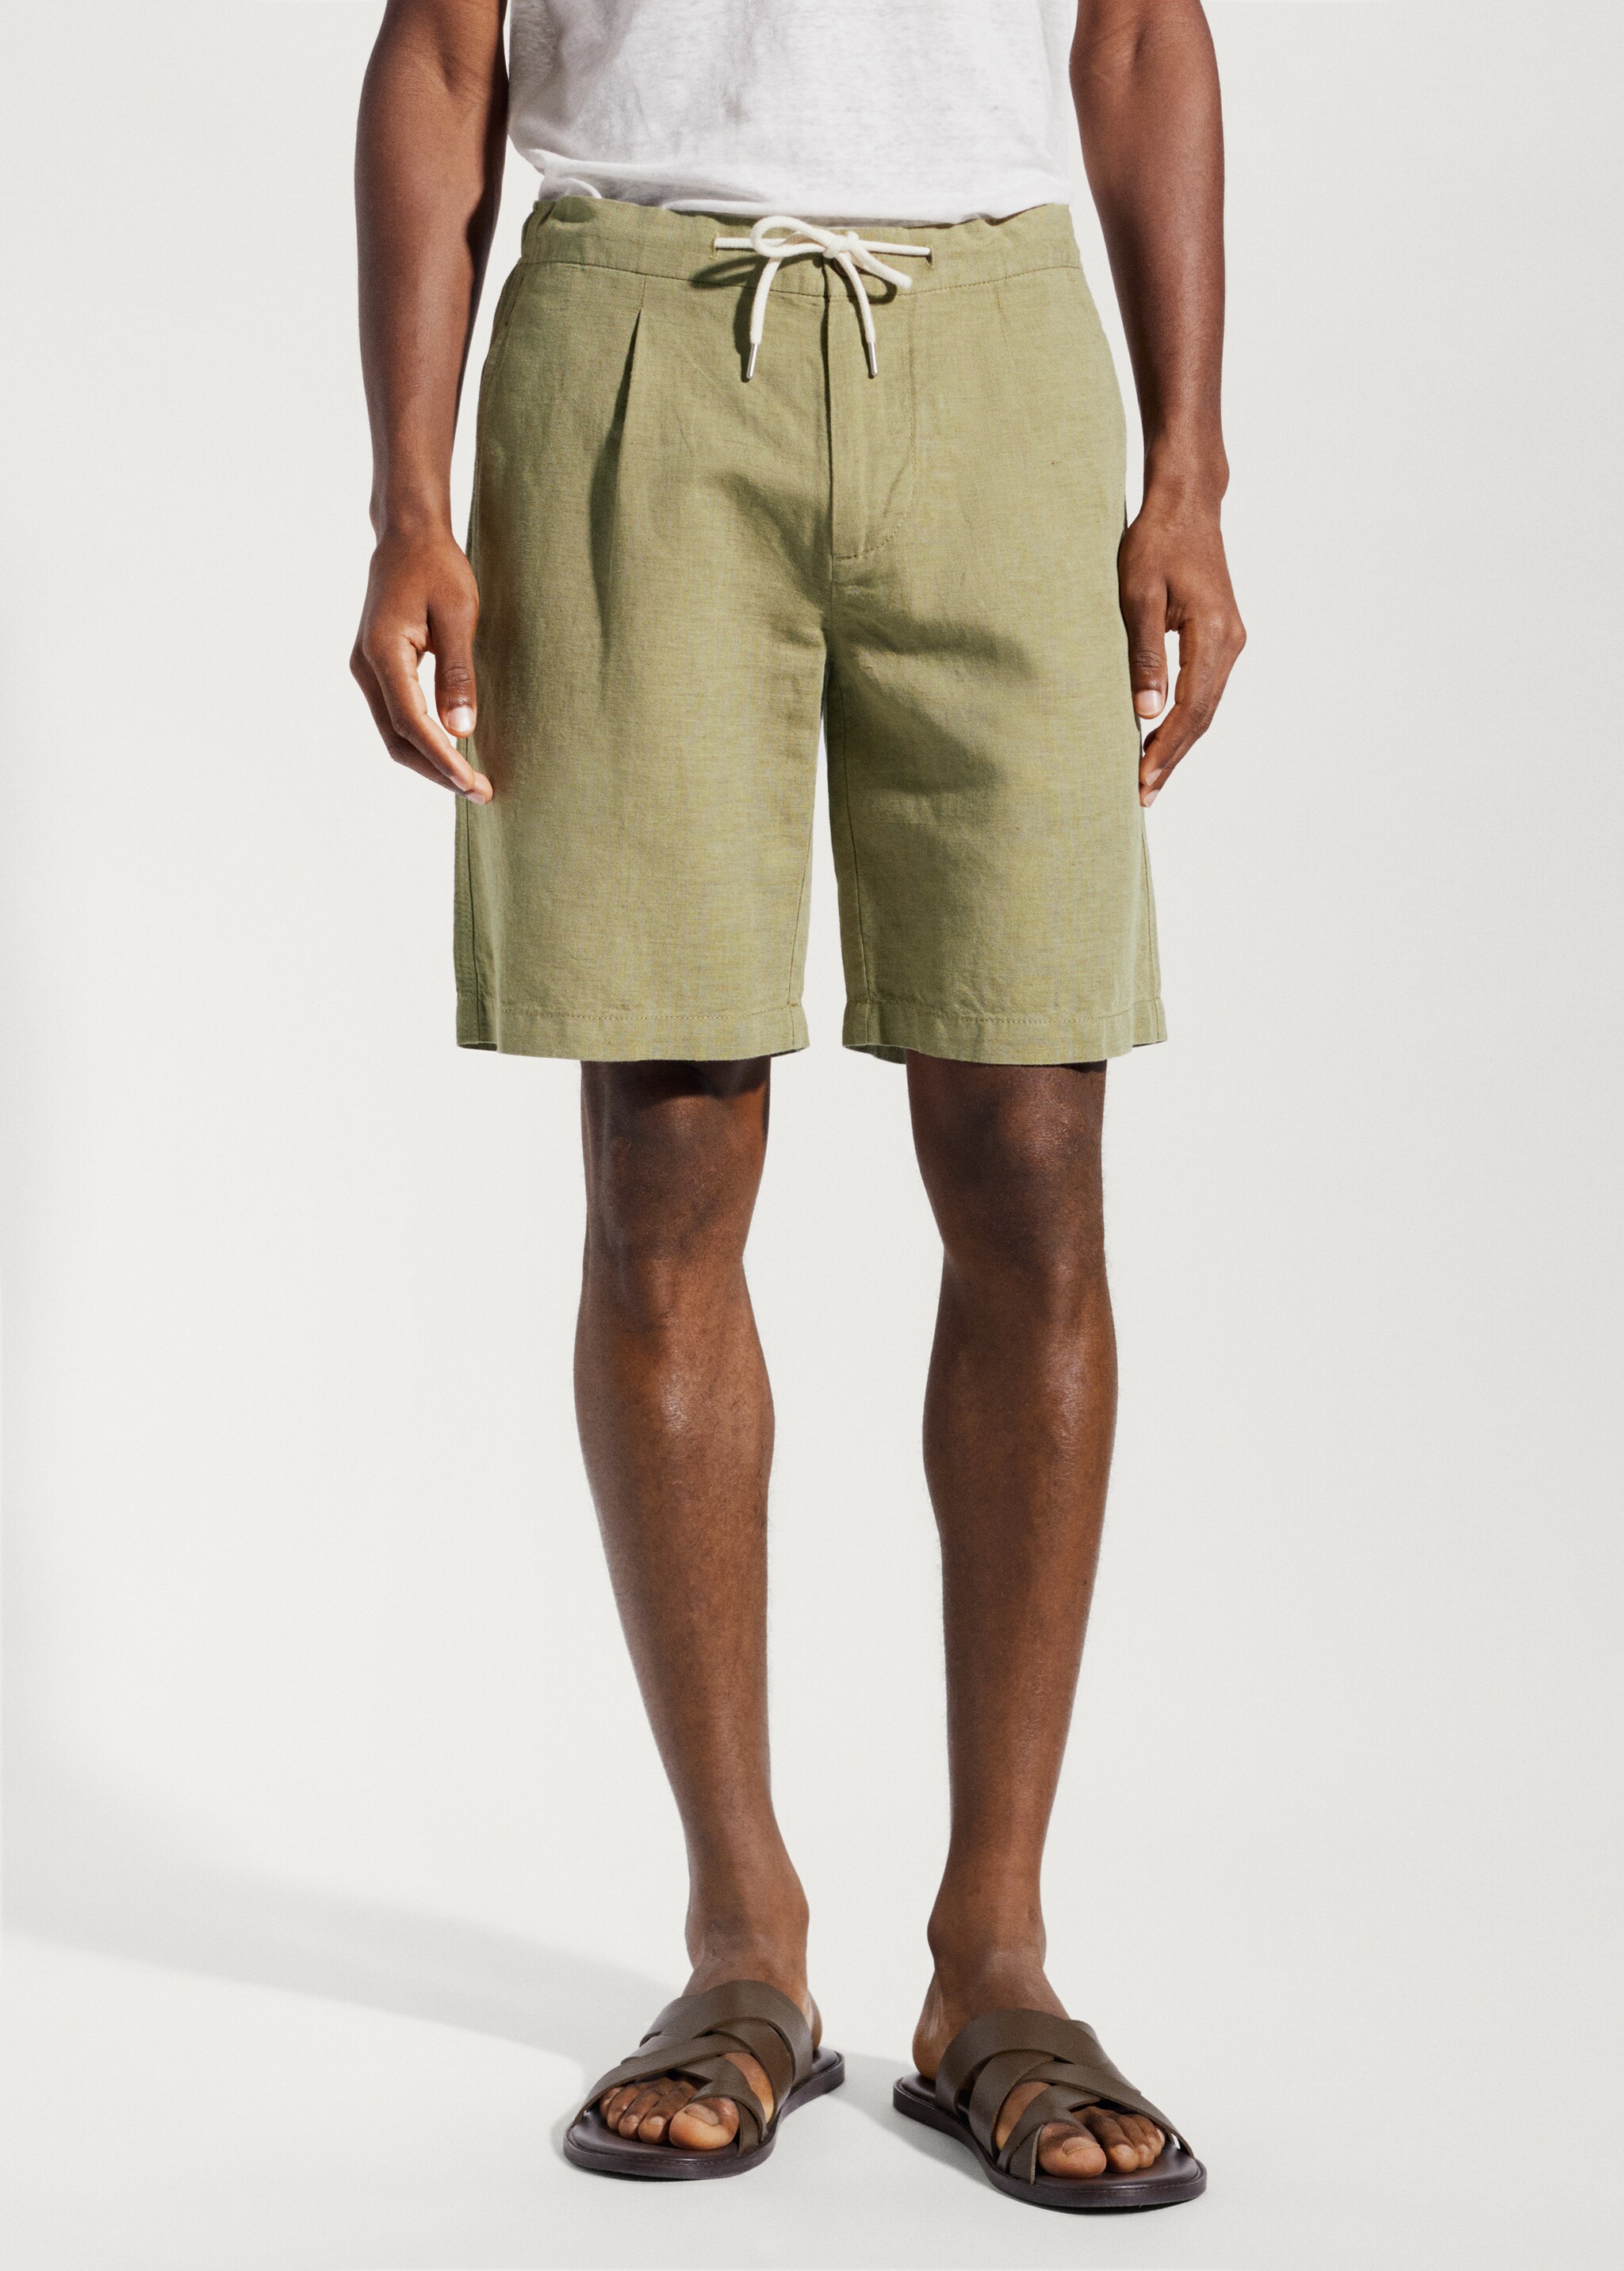 Drawstring linen Bermuda shorts - Medium plane